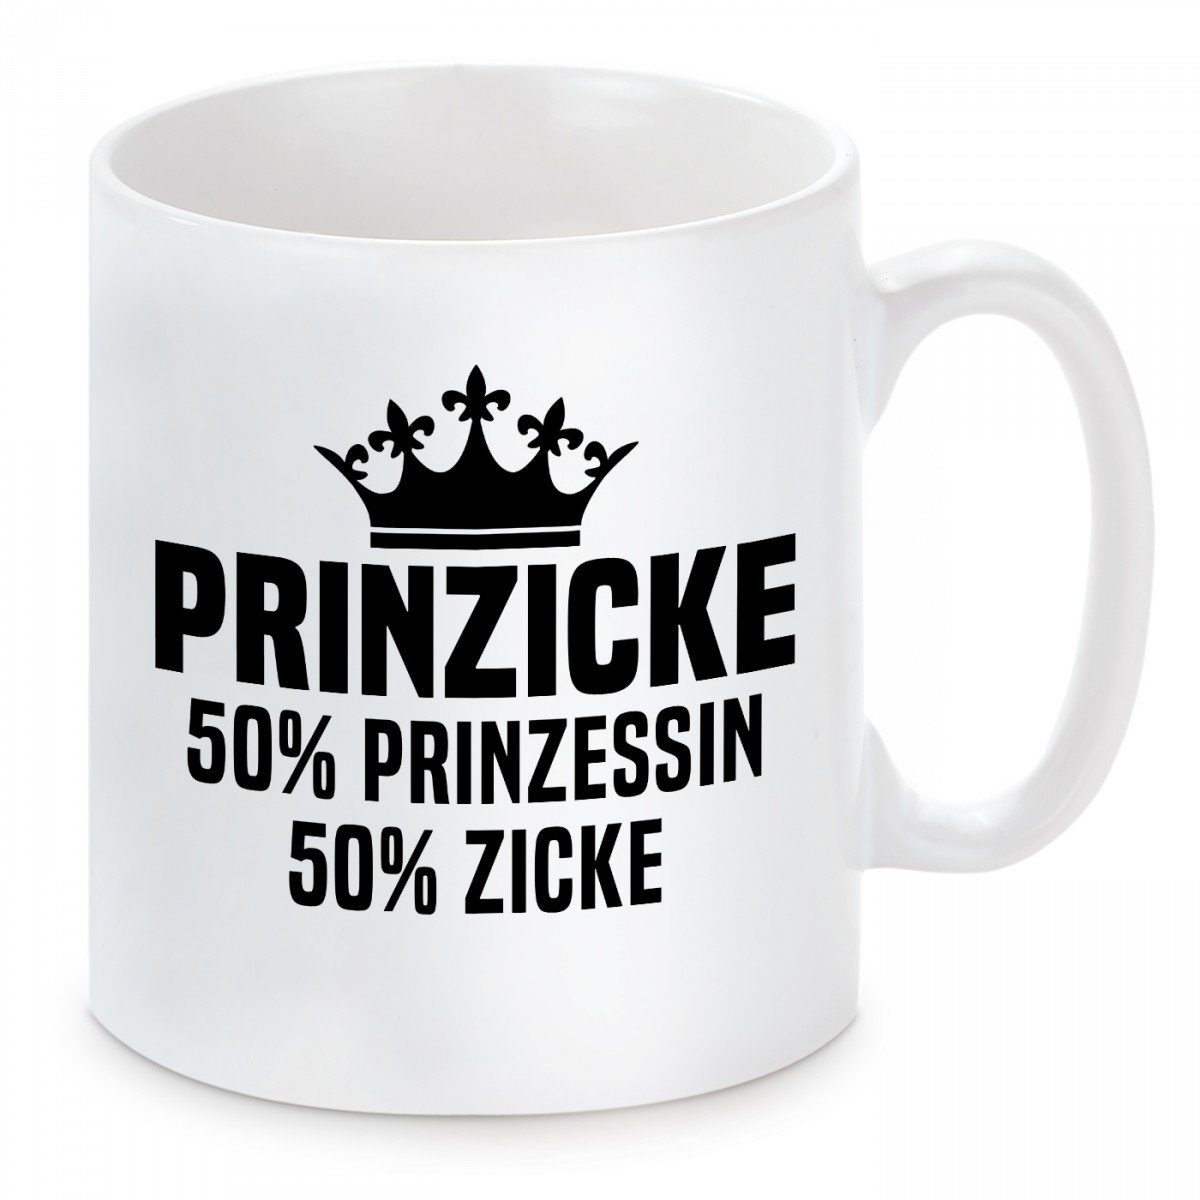 Herzbotschaft Tasse Kaffeebecher mit Motiv PRINZICKE 50% Prinzessin 50% Zicke, Keramik, Kaffeetasse spülmaschinenfest und mikrowellengeeignet